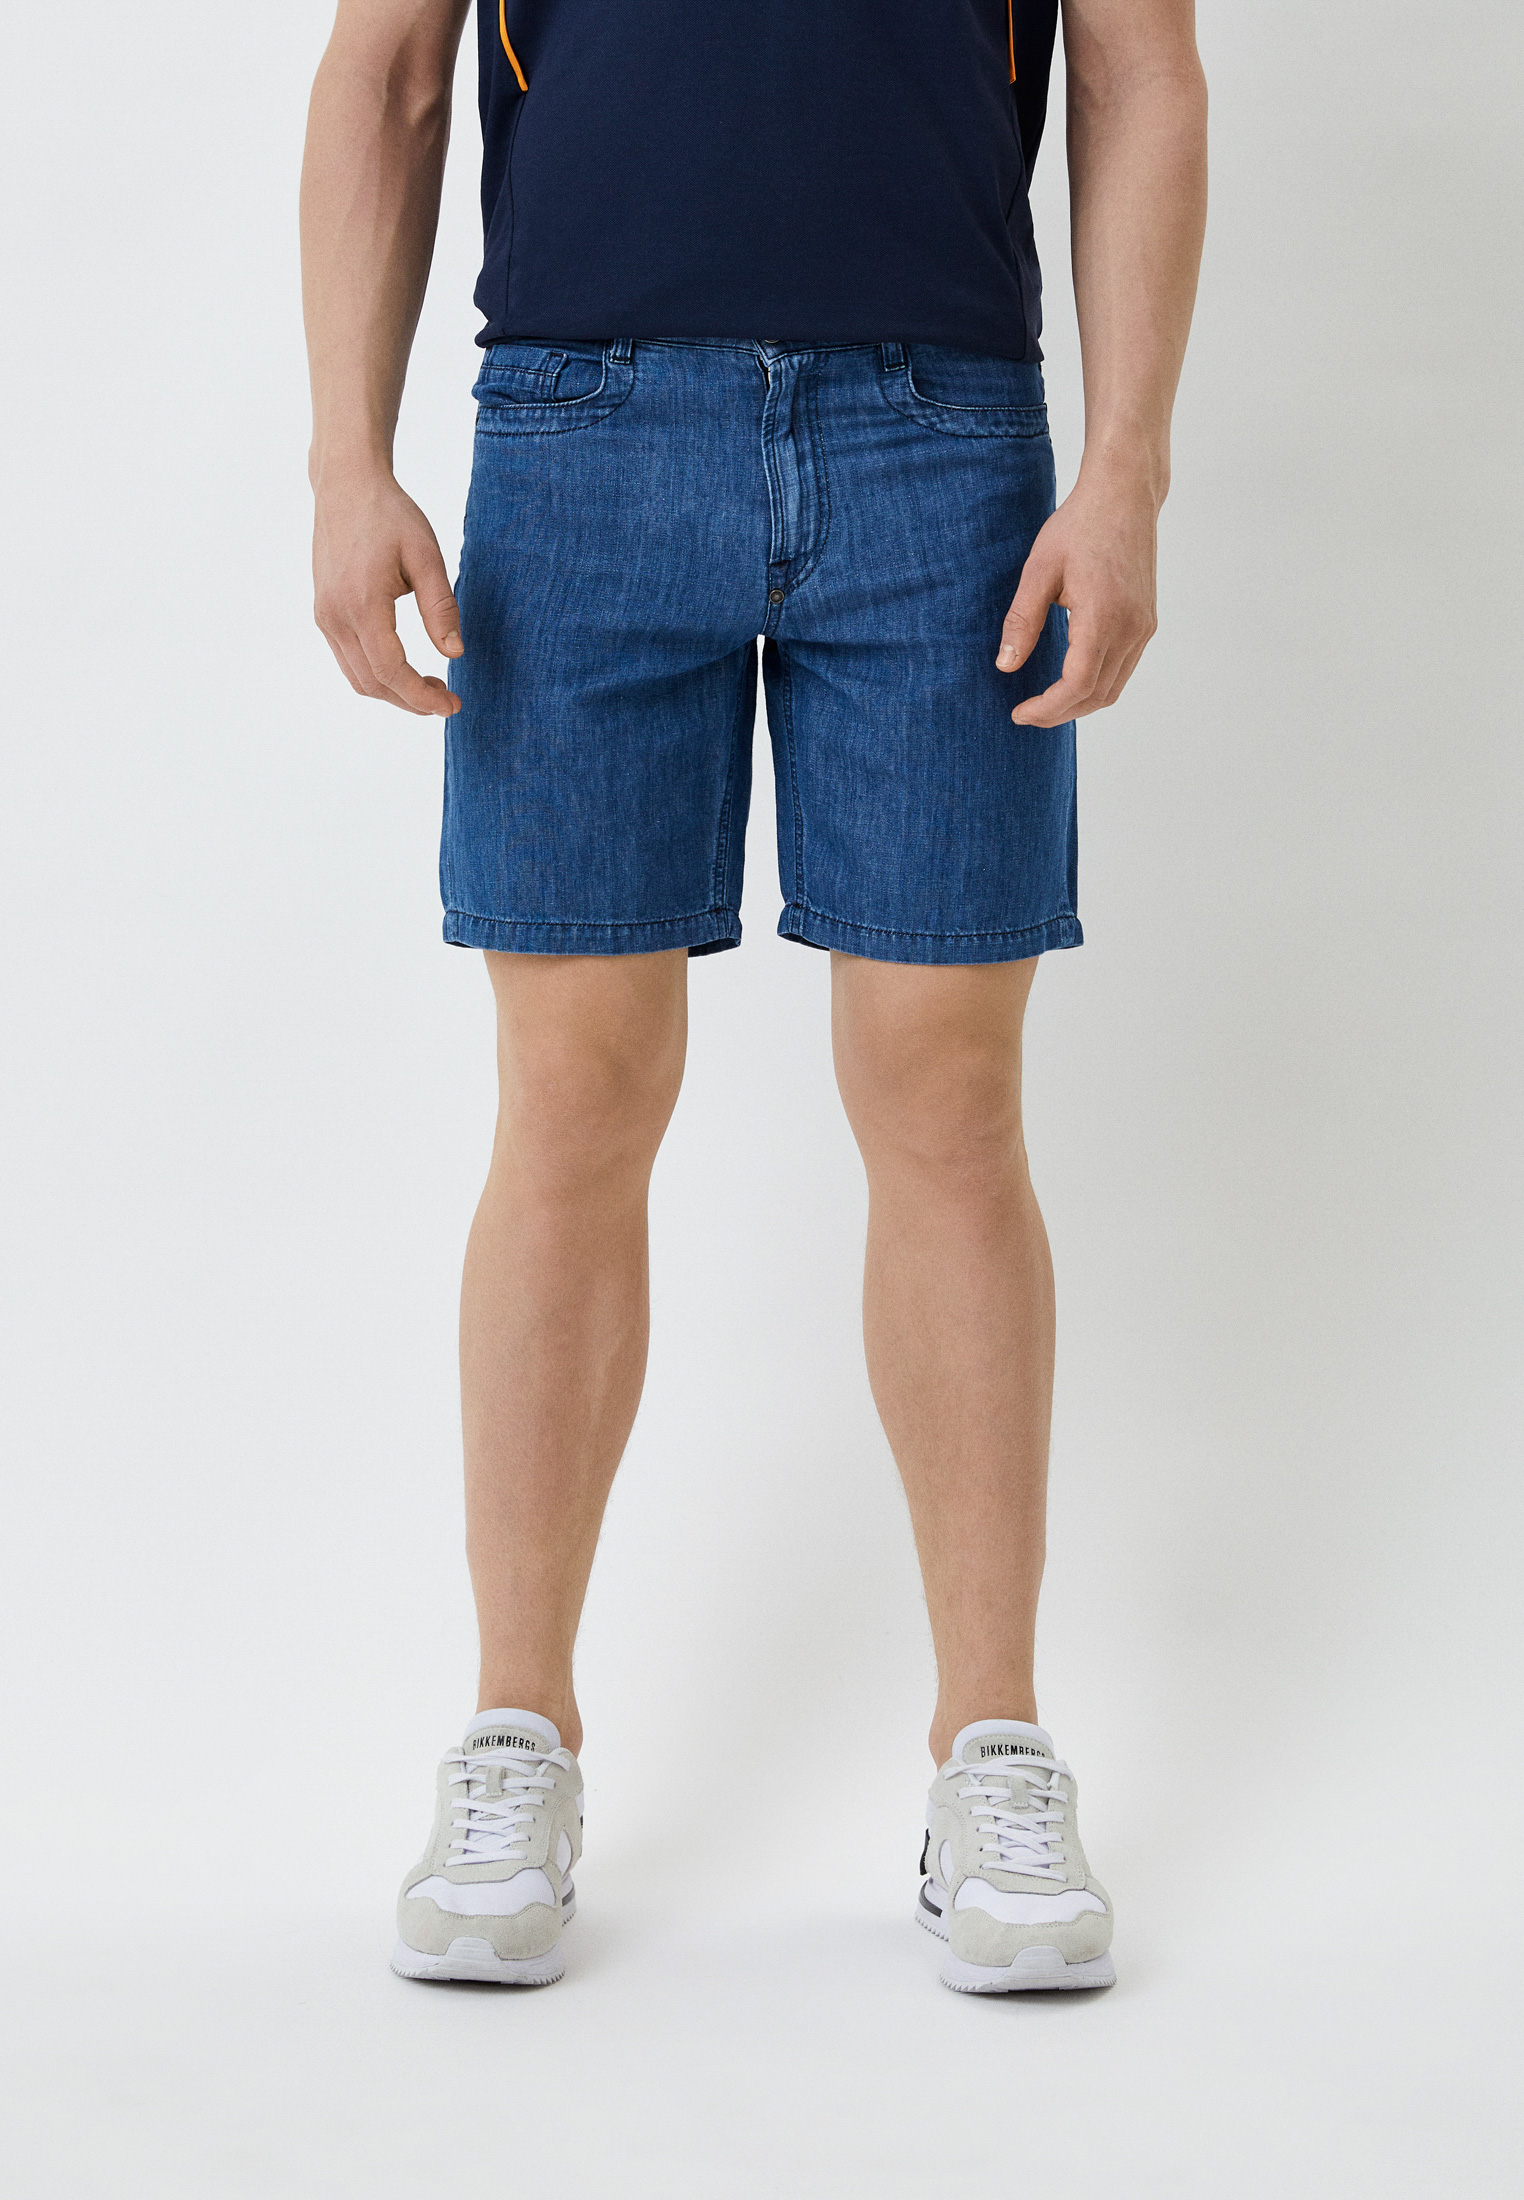 Мужские джинсовые шорты Bikkembergs (Биккембергс) C O 031 80 T 259A: изображение 1